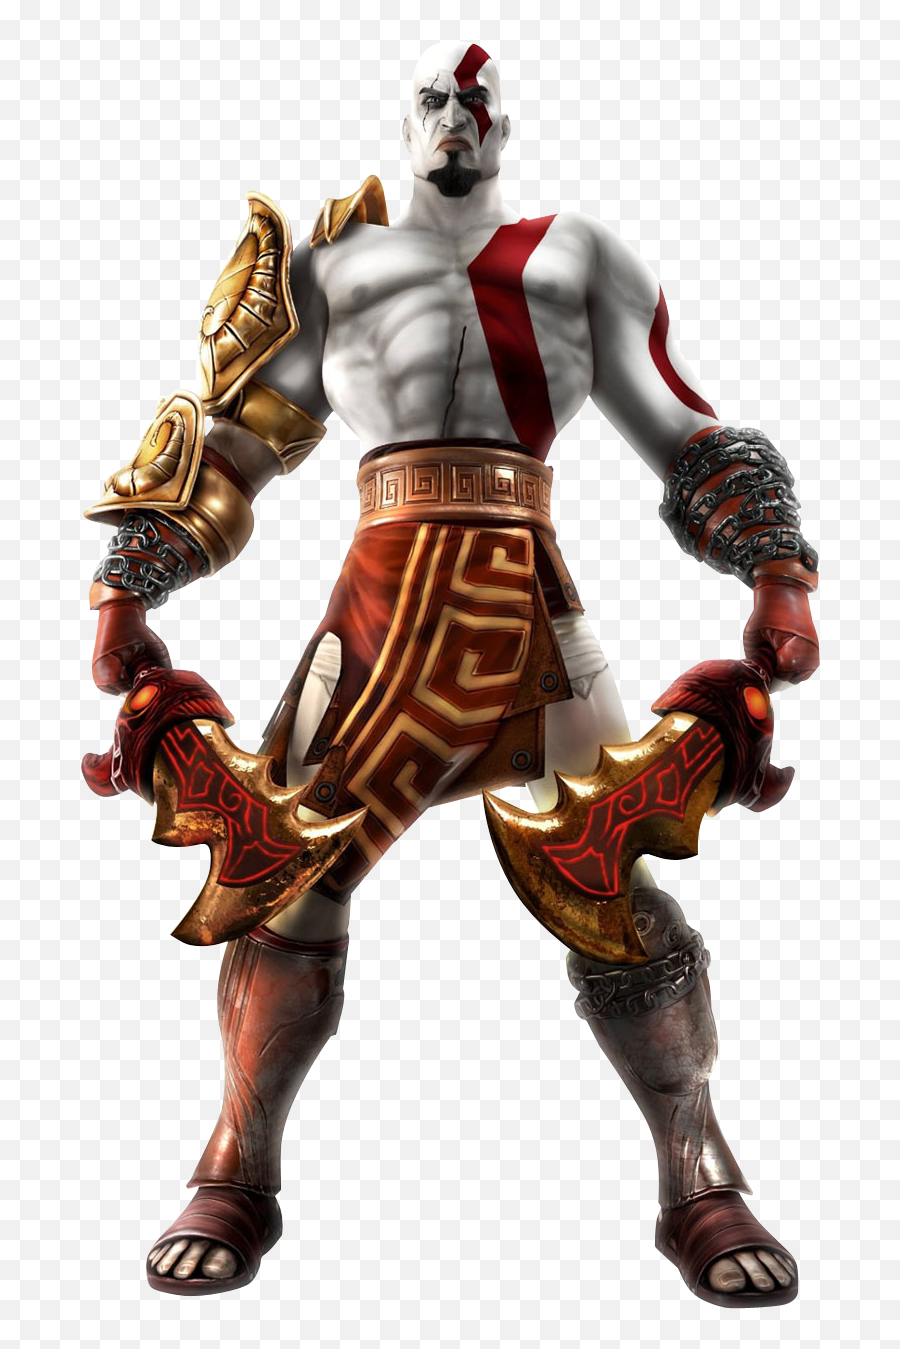 Kratos Concept Art Transparent Png - Playstation All Stars Kratos,Kratos Transparent